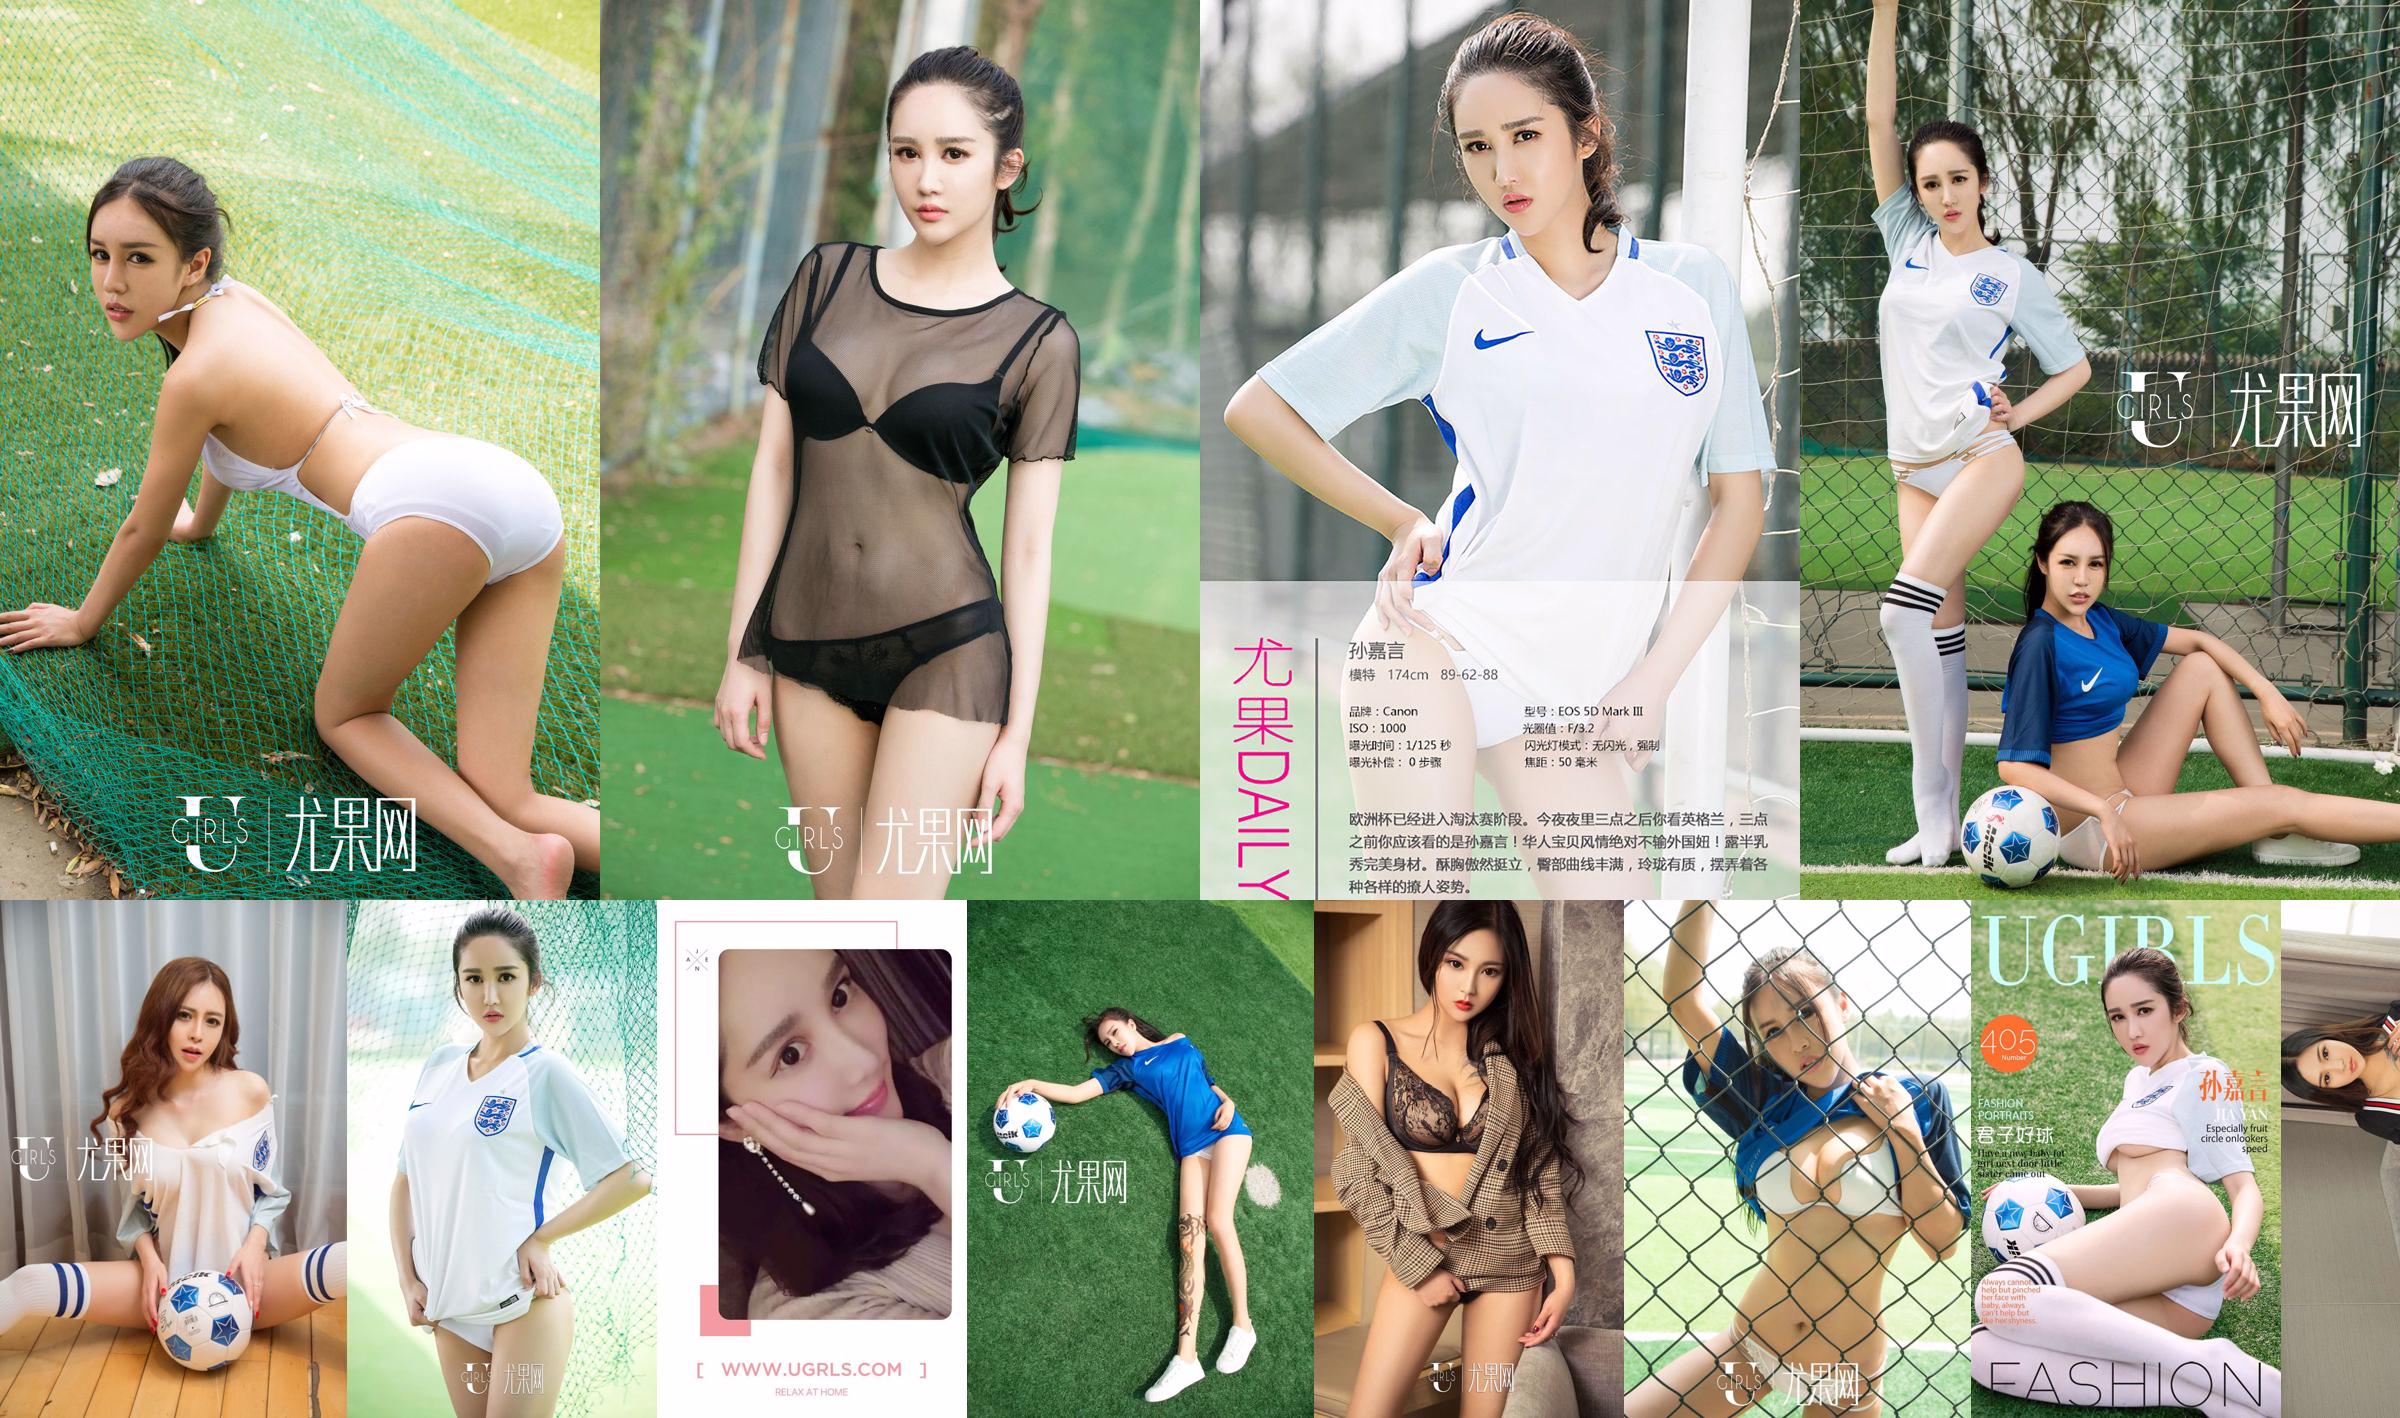 Sun Jiayan / Little Wisteria / Jin Xin / Li Yaying / Chun Jiao "Football Baby" [Ugirls] T019 No.908f19 Page 1